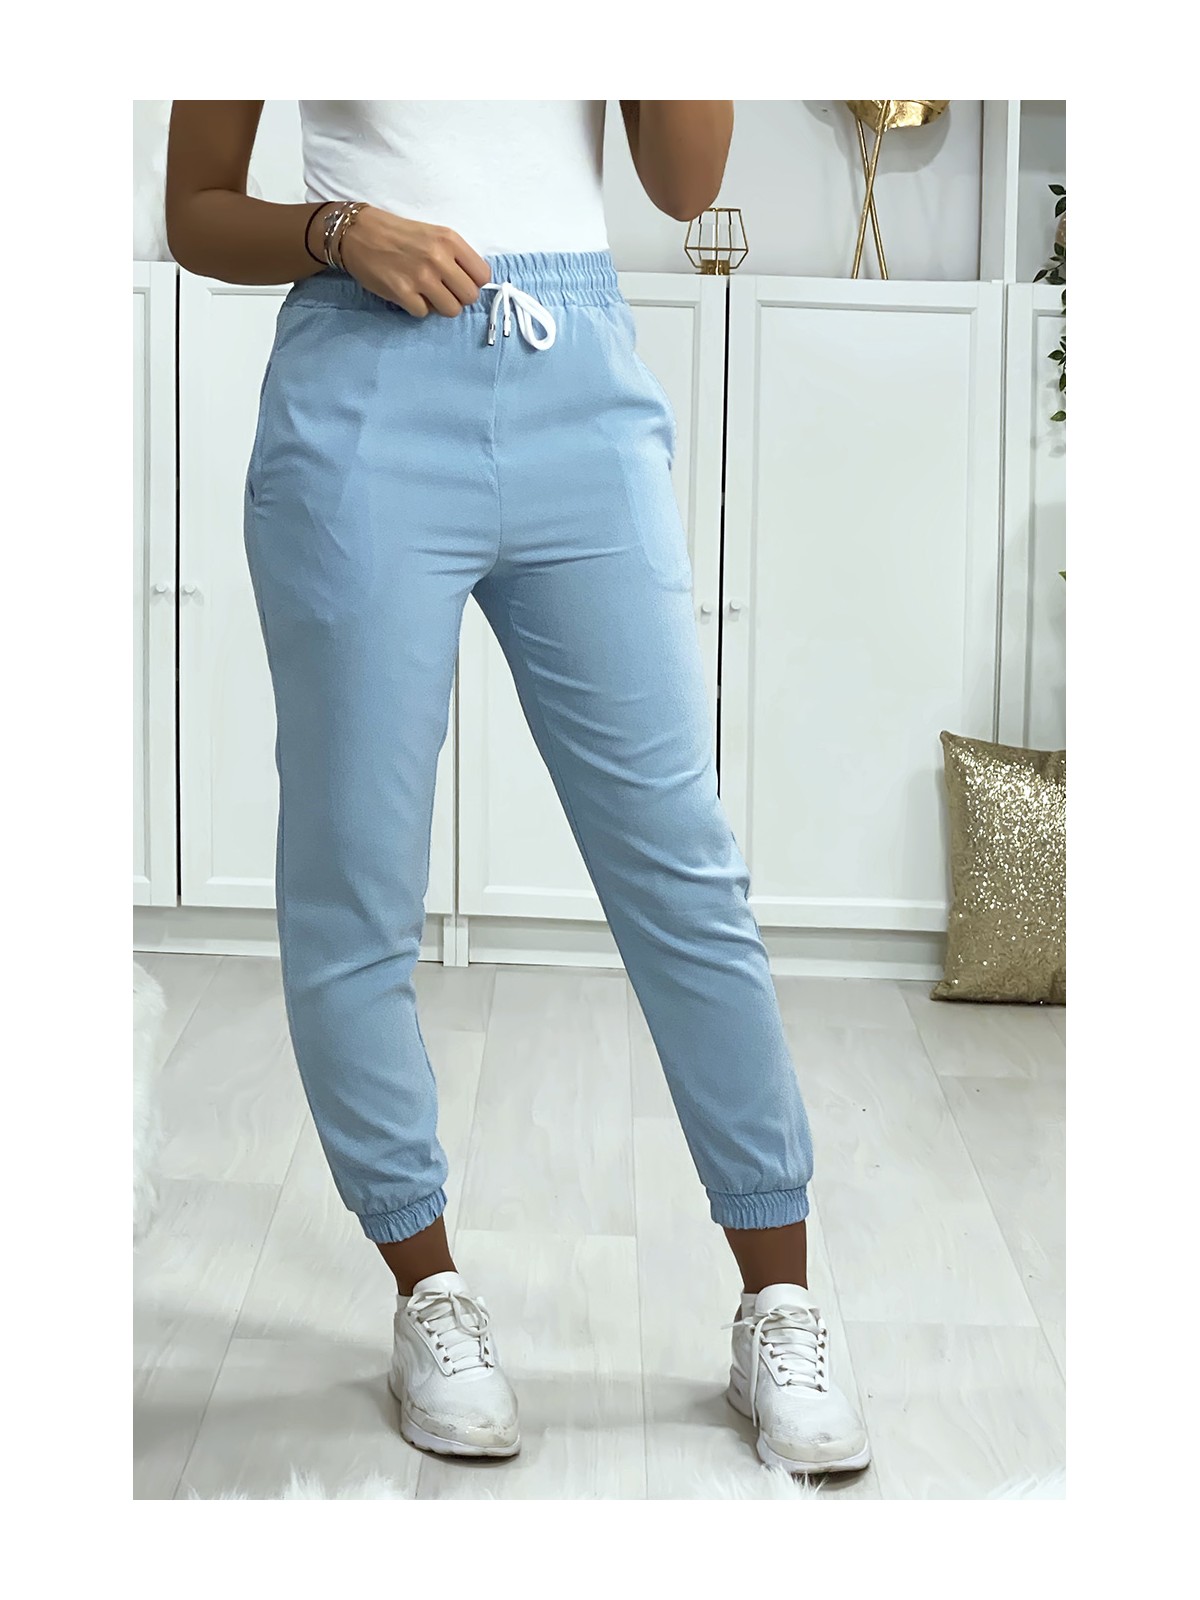 Pantalon jogging turquoise avec poche serré en bas - 2